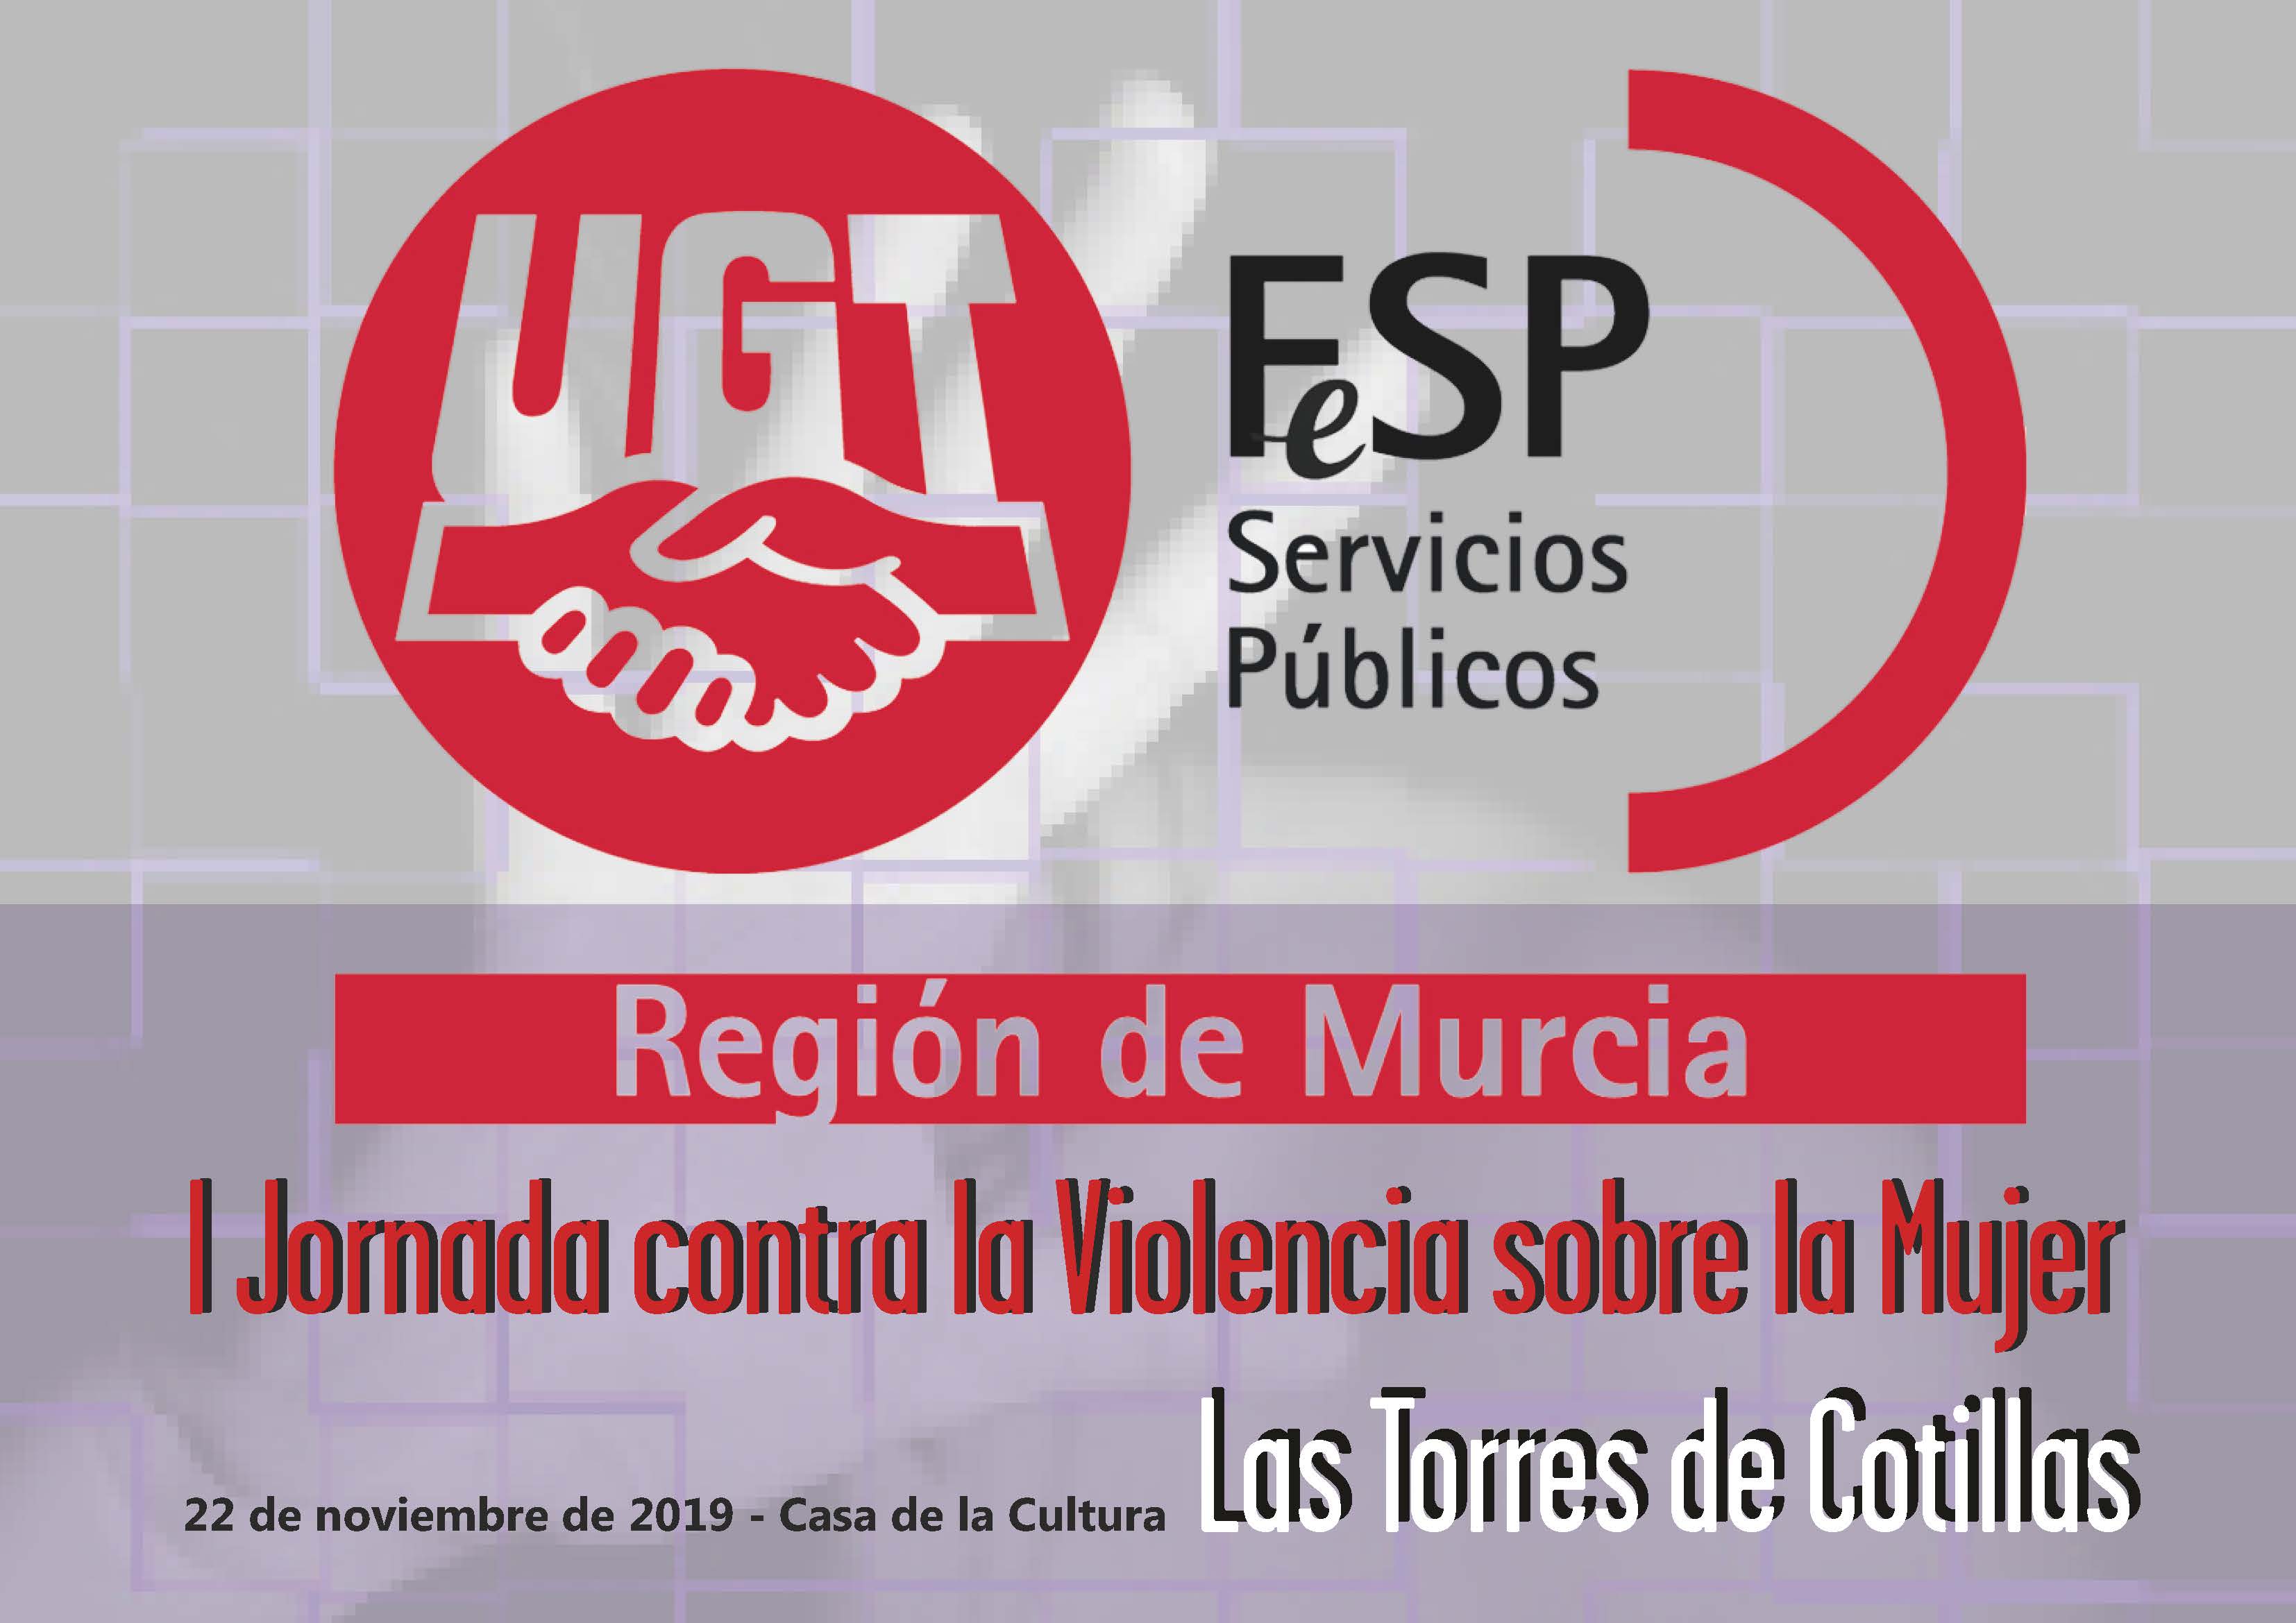 FeSP-UGT organiza la I Jornada contra la Violencia sobre la Mujer en Las Torres de Cotillas